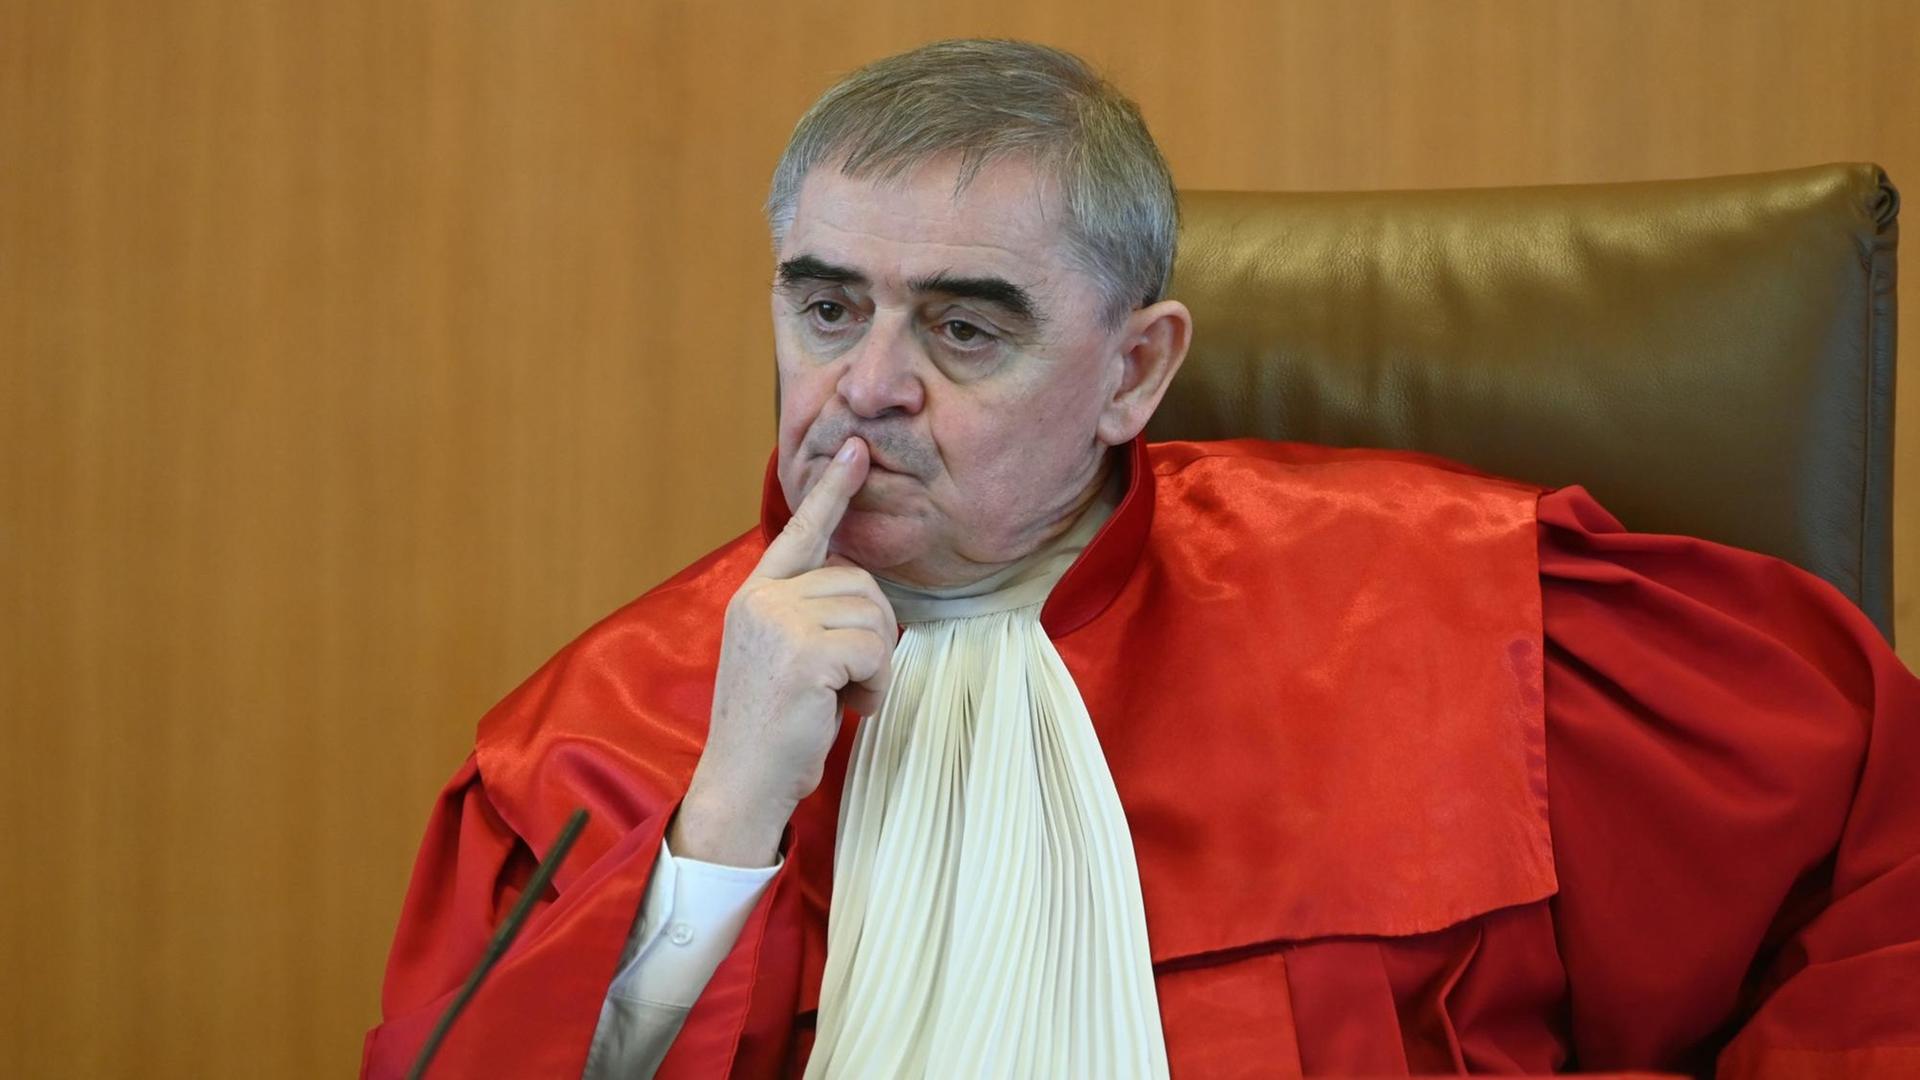 Justiz - Scheidender Bundesverfassungsrichter Müller hält Ex-Politiker am höchsten deutschen Gericht ungeachtet für sinnvoll